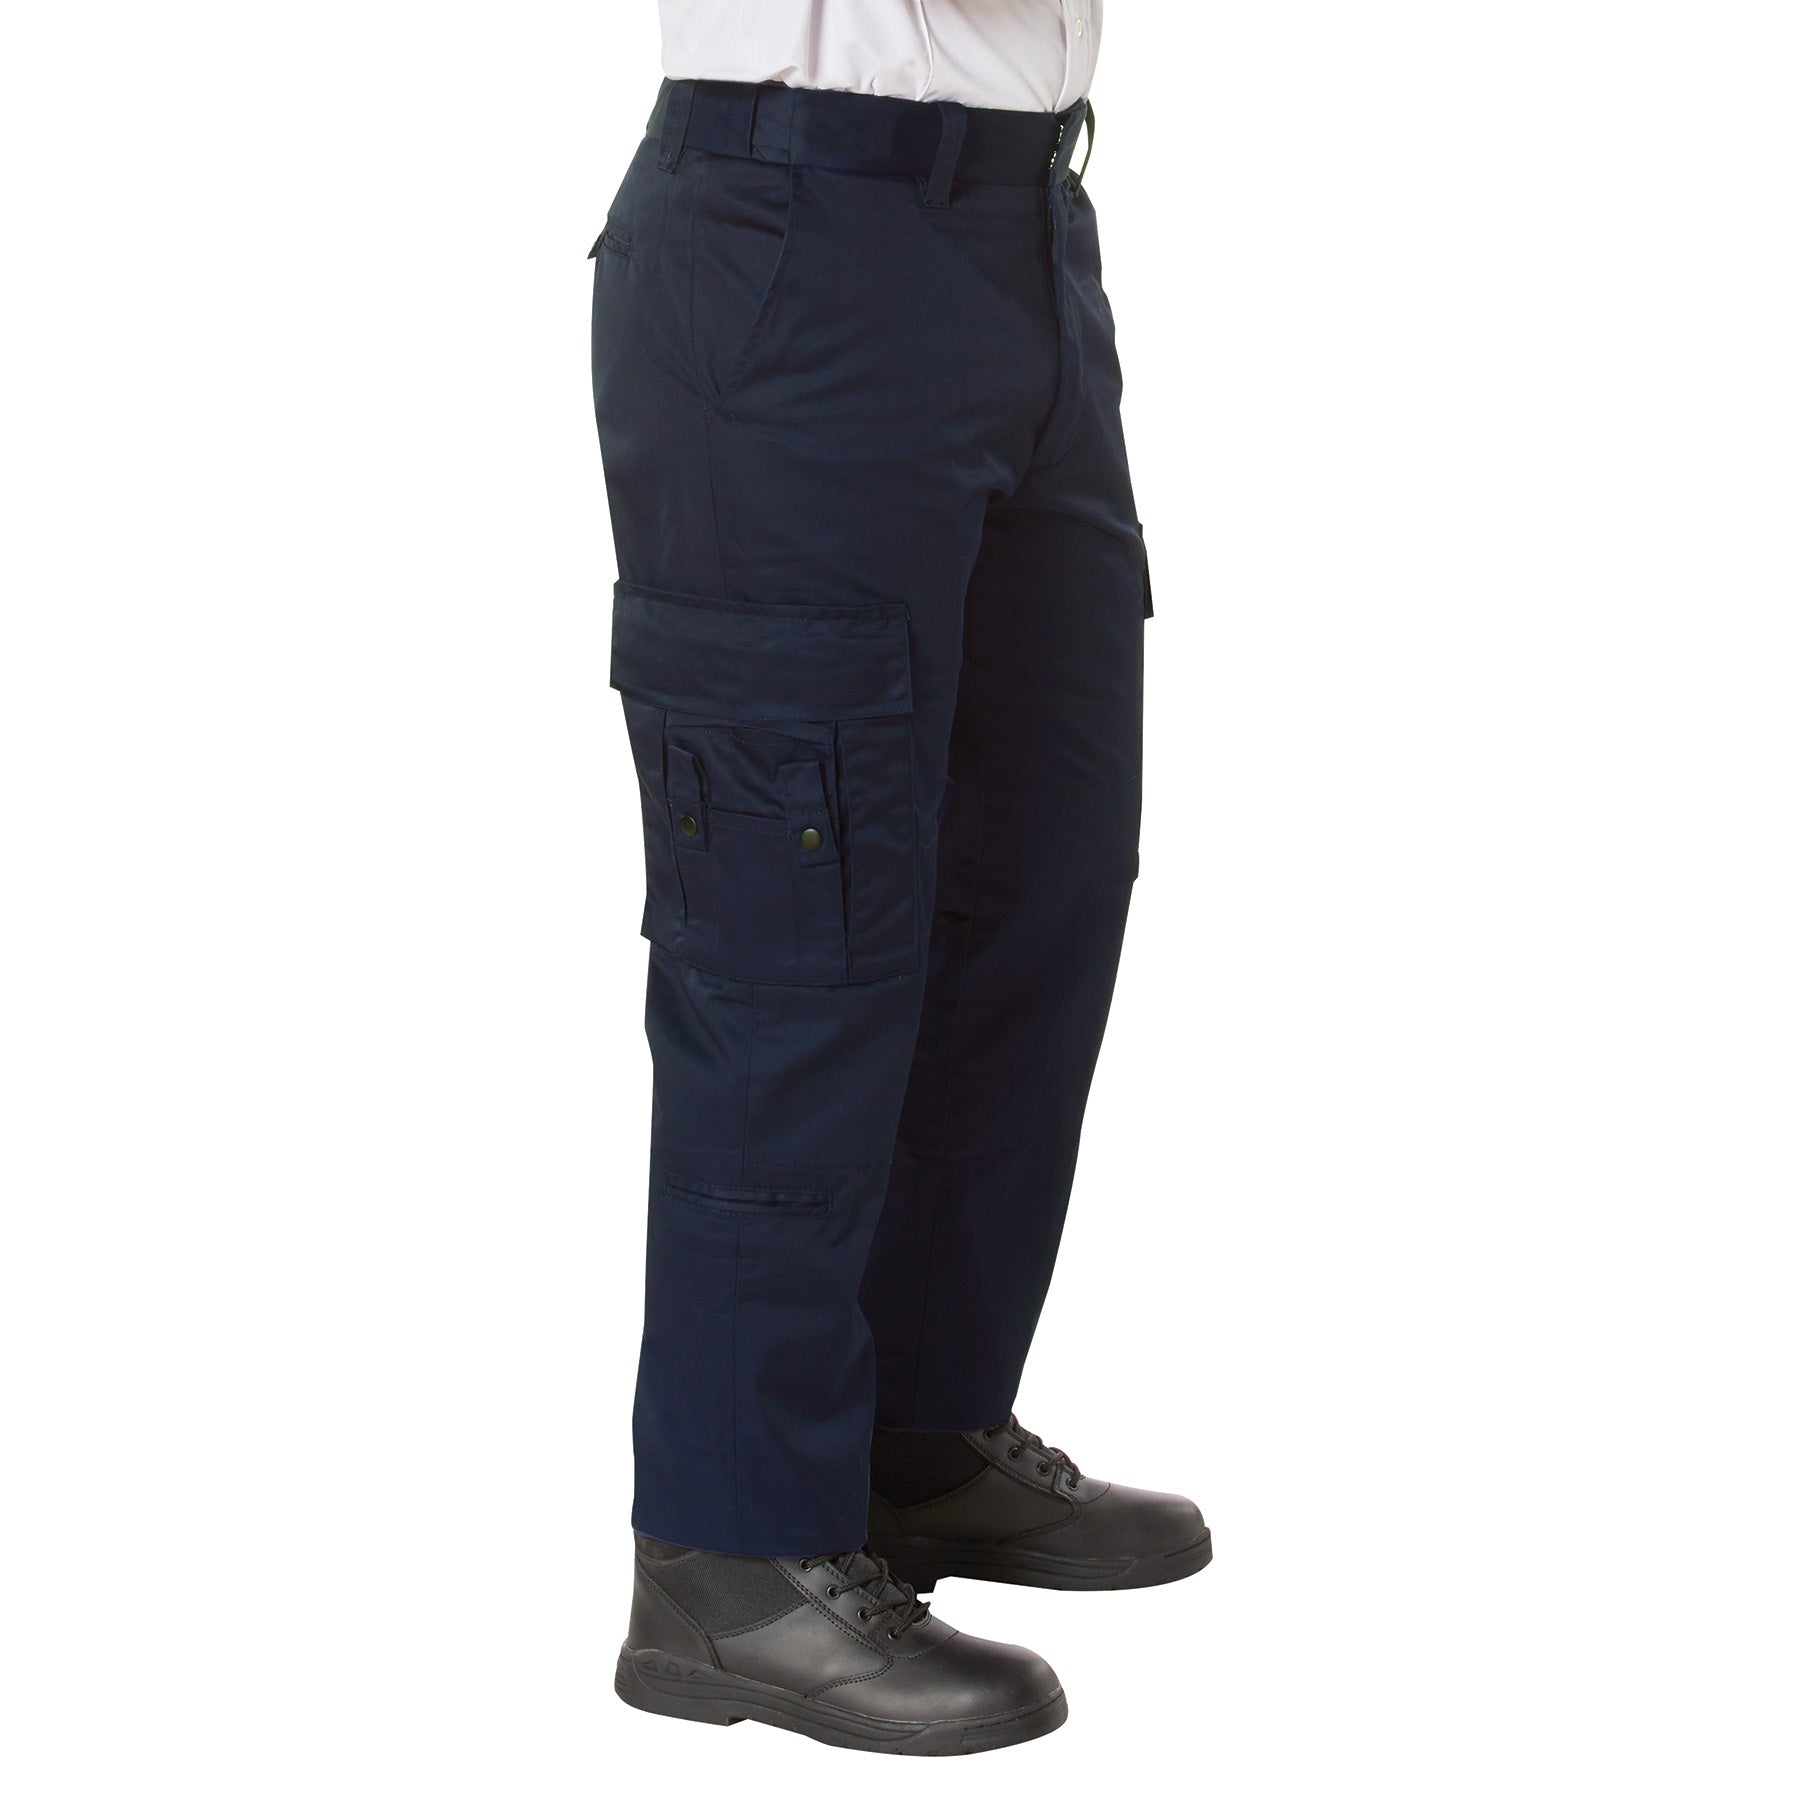 [Public Safety] Men's Poly/Cotton EMT Pants